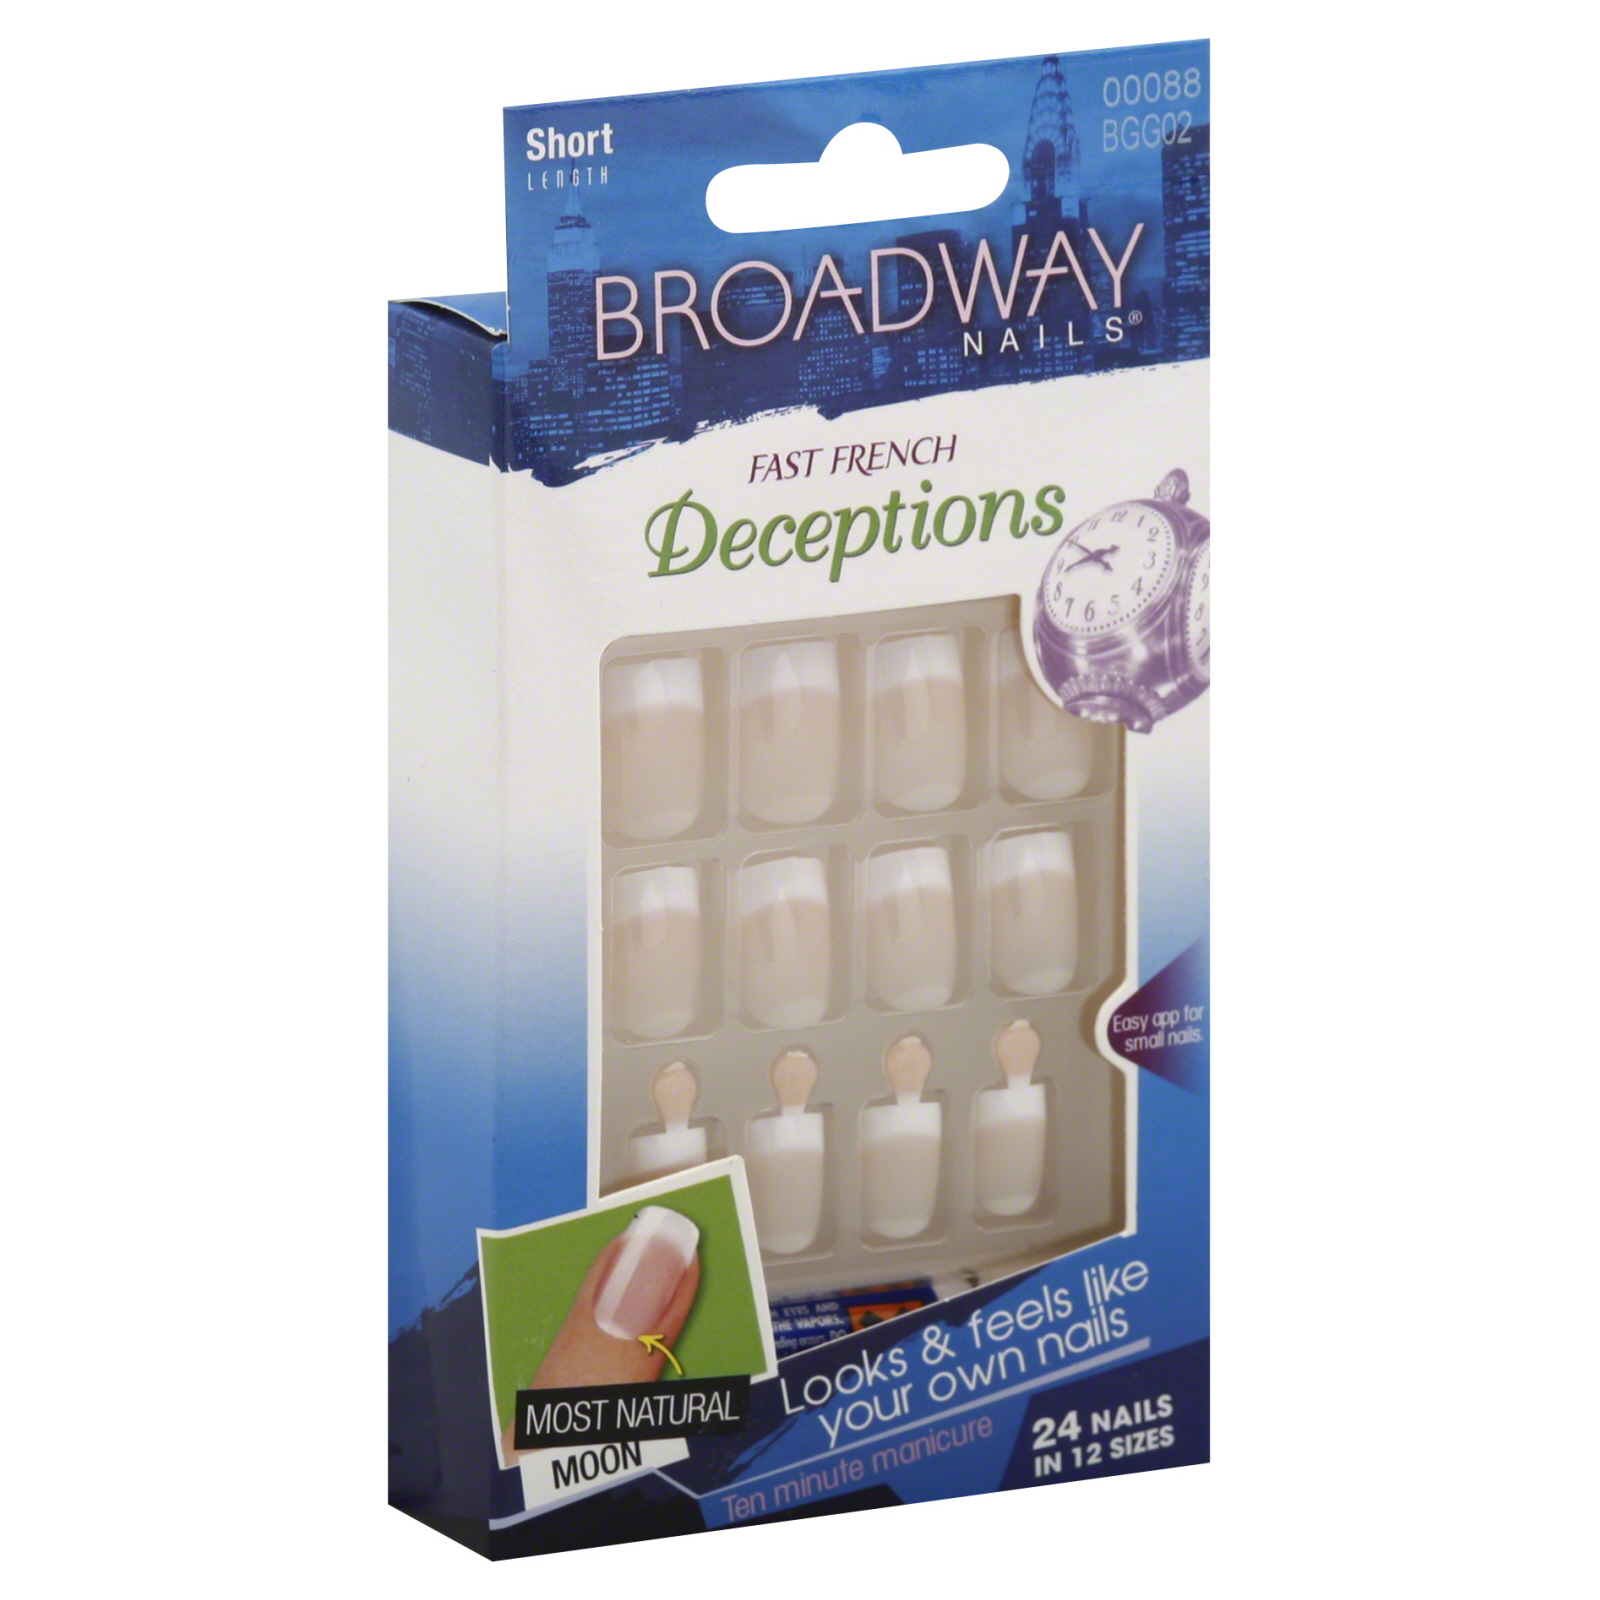 Kiss Broadway Nails Natural Deceptions Nail Kit, Short Length, Oblivious BGG02, 1 kit